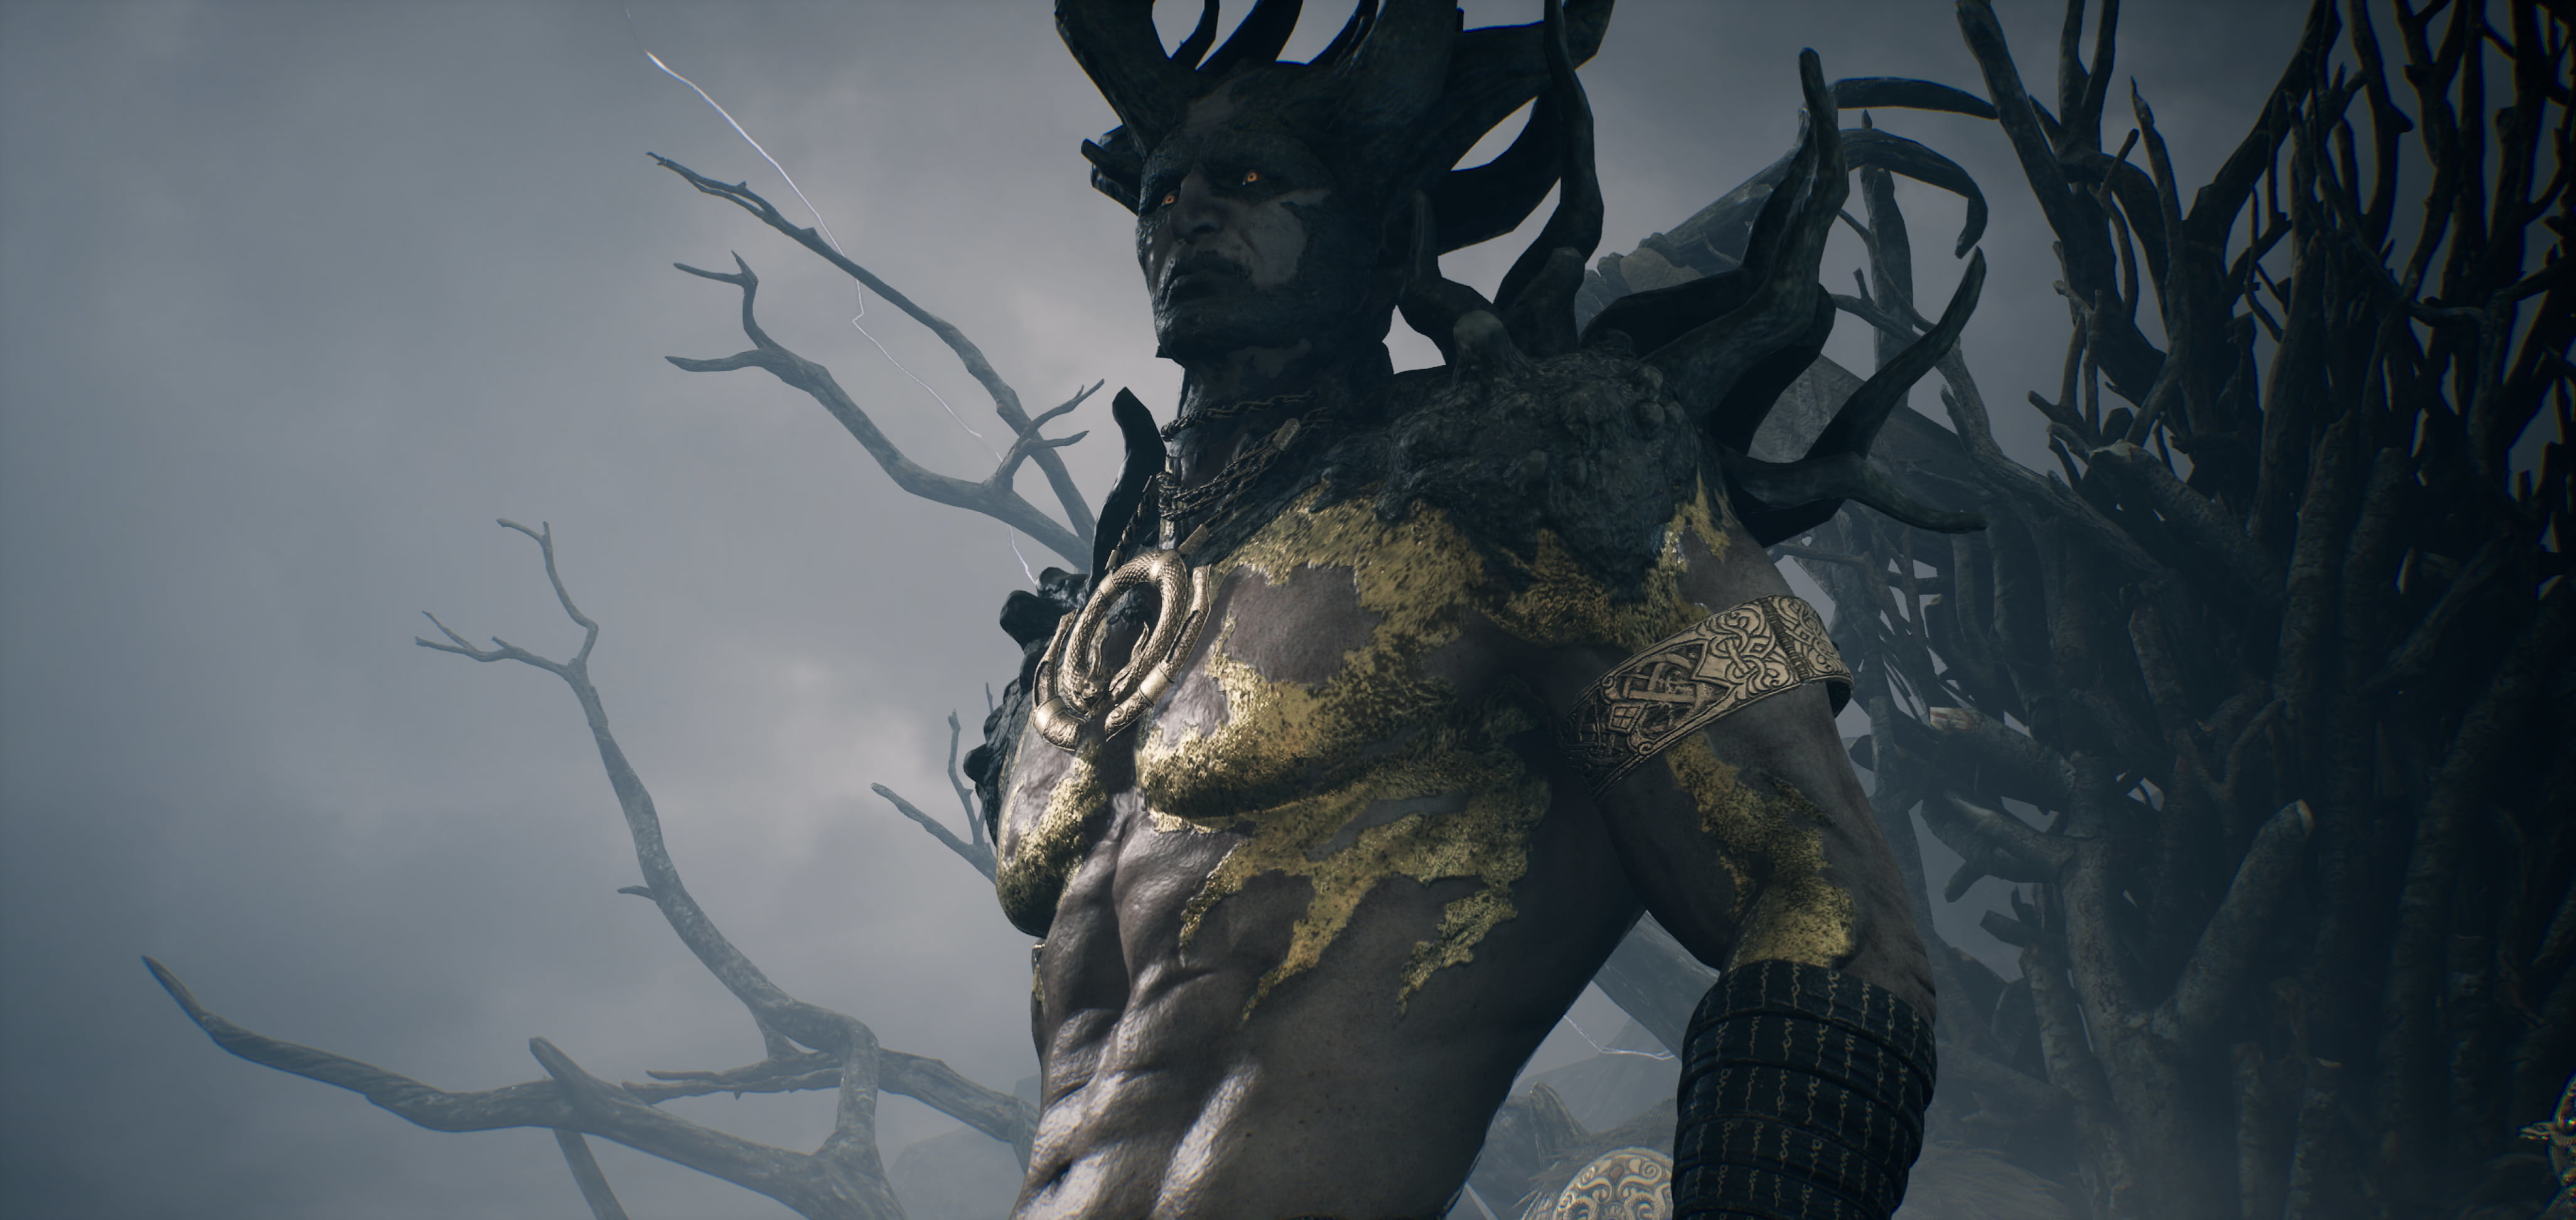 北欧神话 mmorpg《奥丁:神叛》 释出全新游戏预告影片「洛基的愤怒」